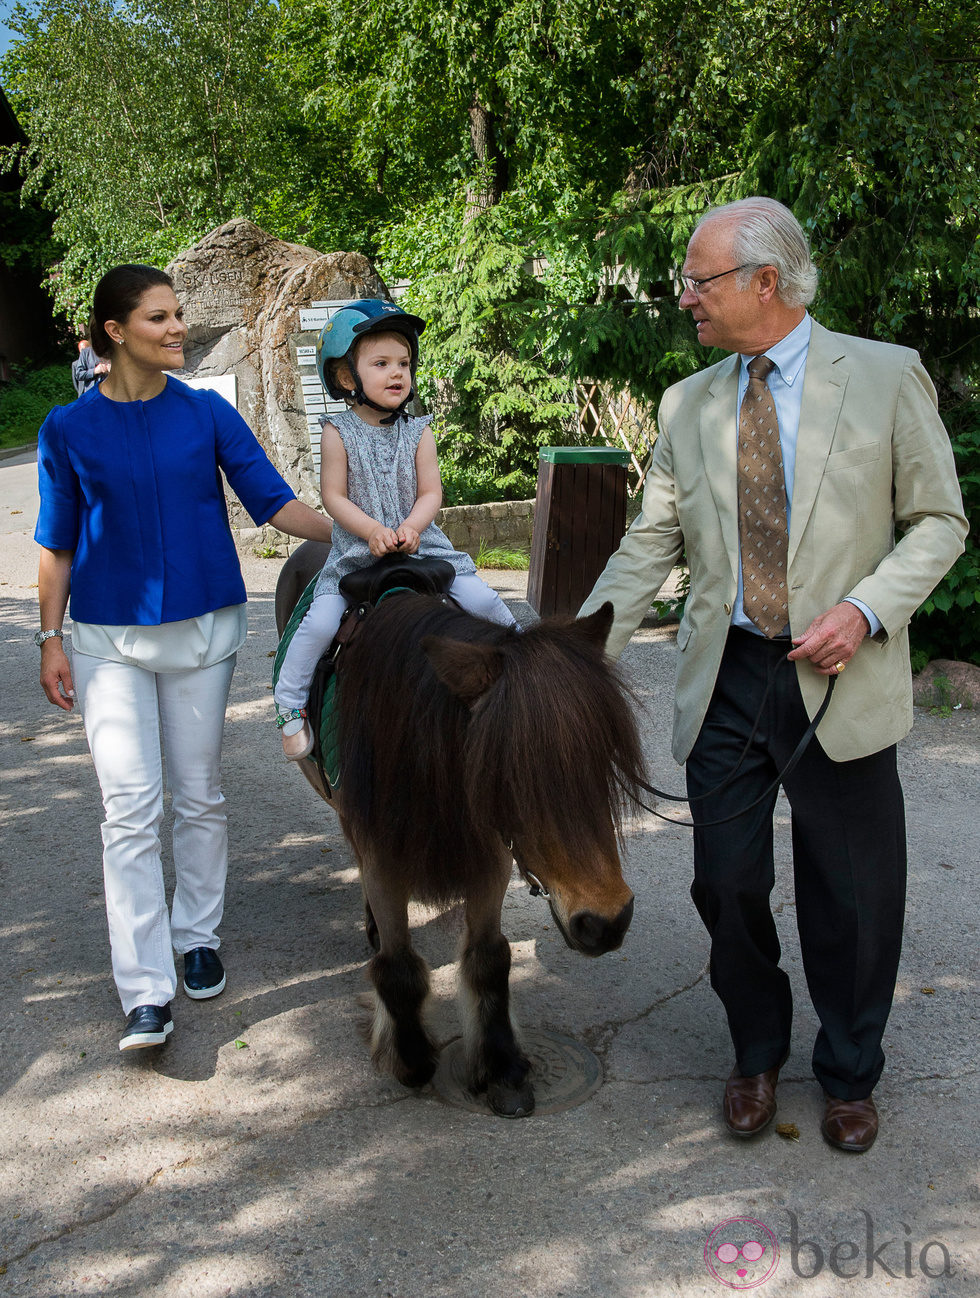 Estela de Suecia montando en pony junto a la Princesa Victoria y el Rey Carlos Gustavo